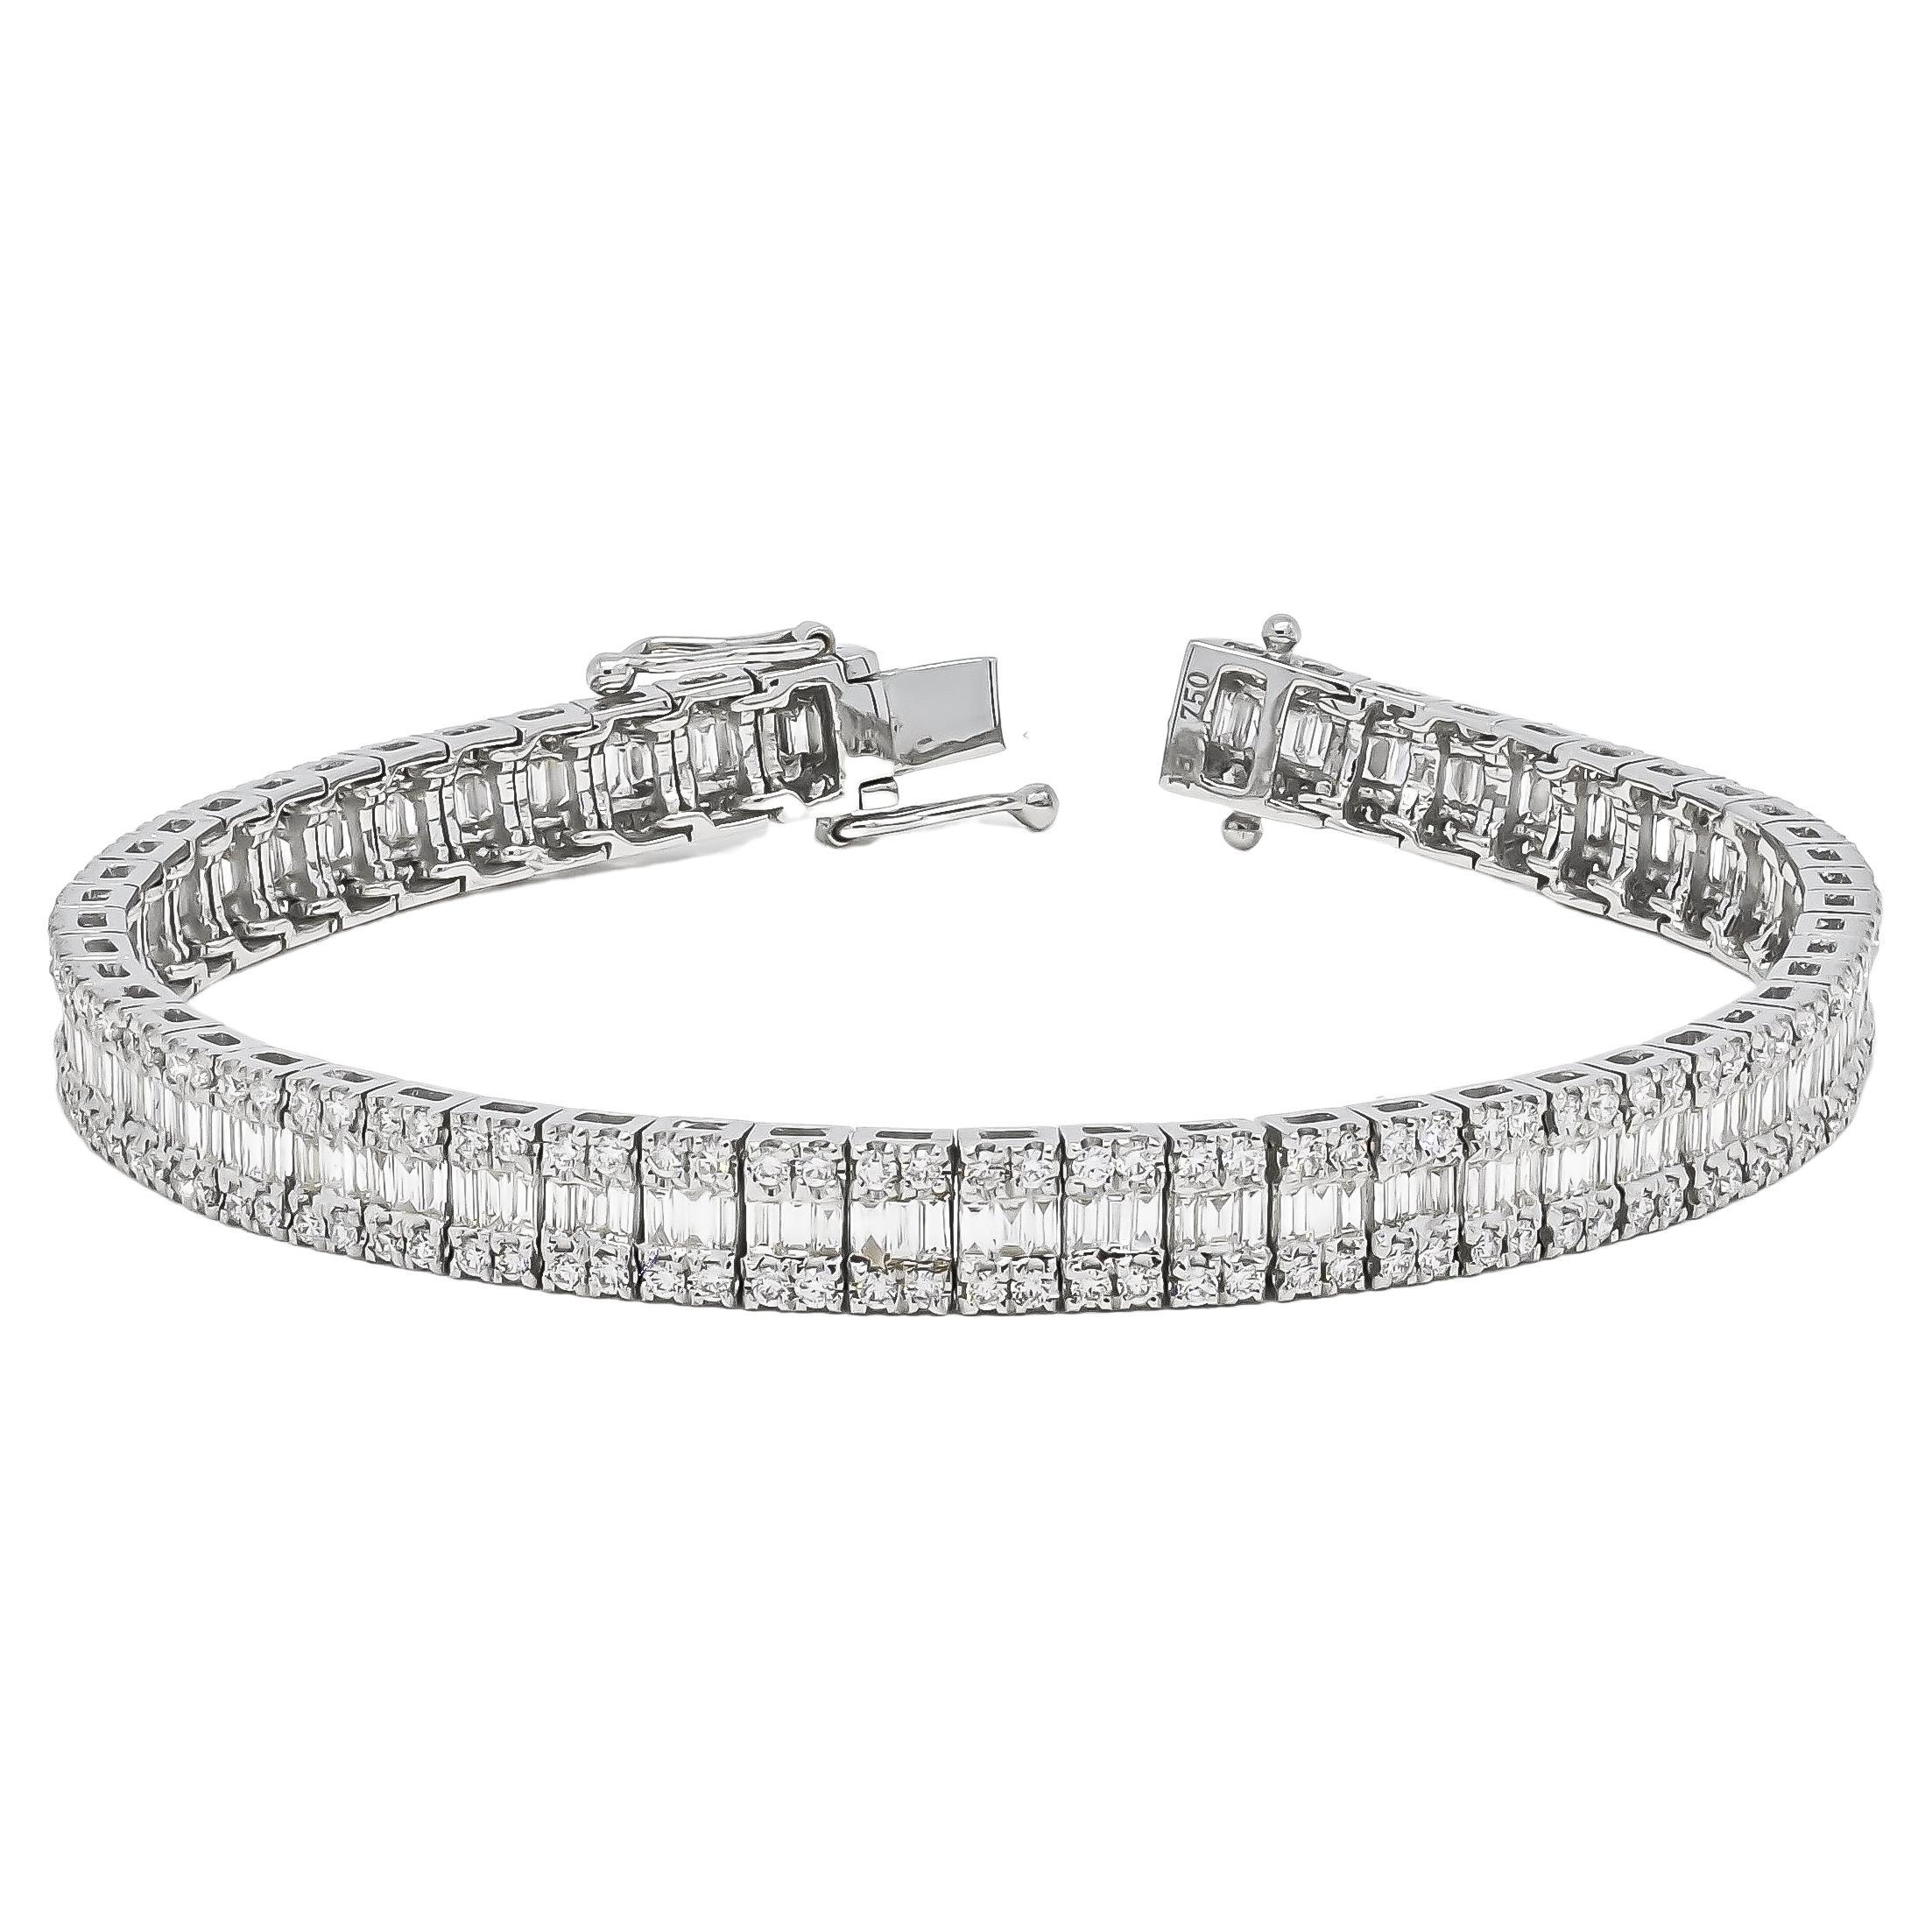 Bracelet tennis baguette en or blanc 18 carats avec diamants naturels 6,7 carats